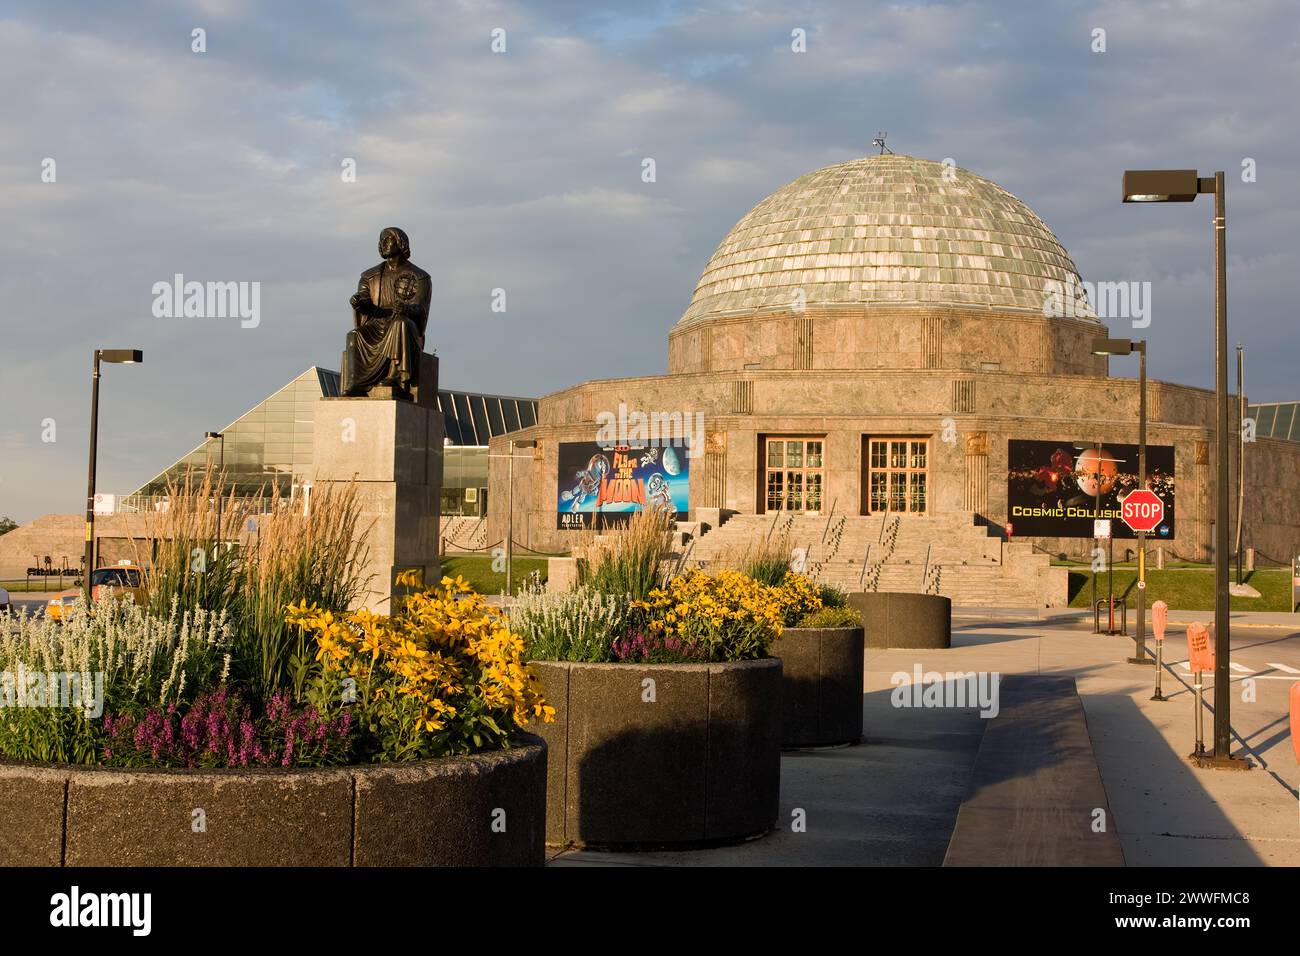 Chicago, Illinois - Adler planetarium, Copernicus statue. Stock Photo